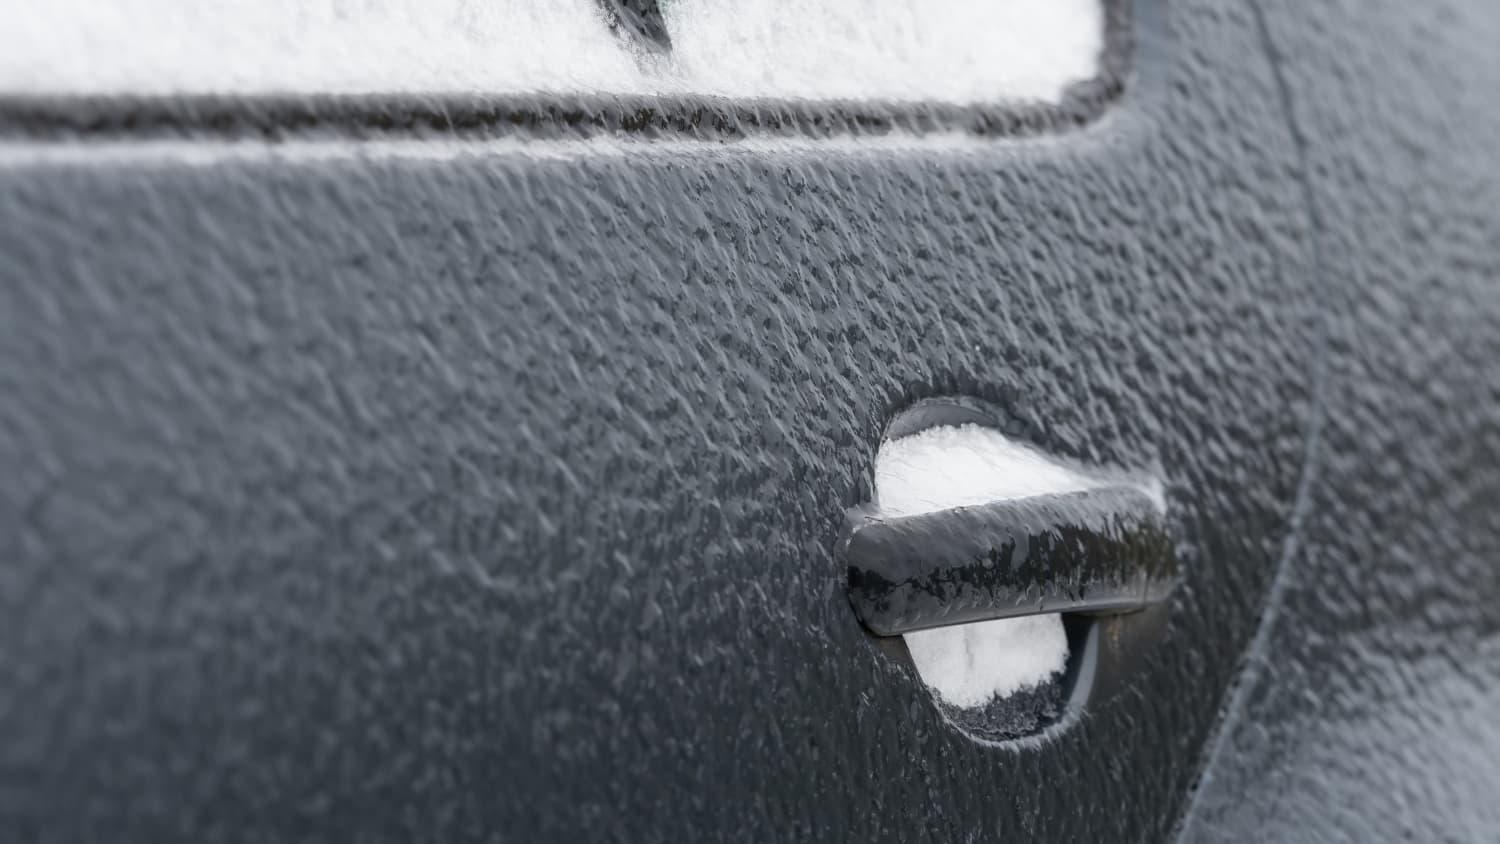 Autotür zugefroren und vereist: Mit diesem Trick geht sie wieder auf